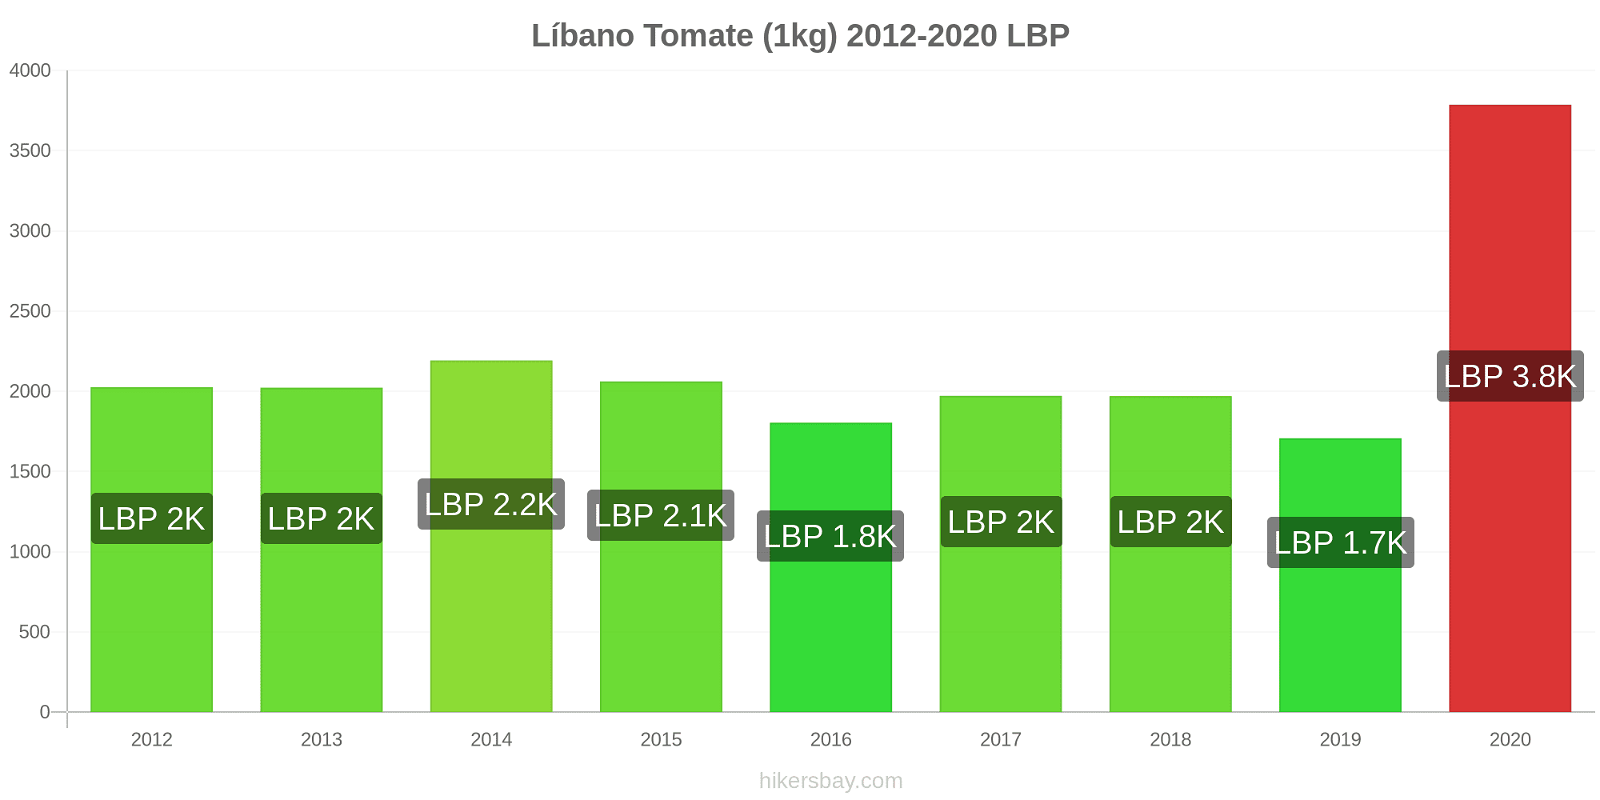 Líbano variação de preço Tomate (1kg) hikersbay.com